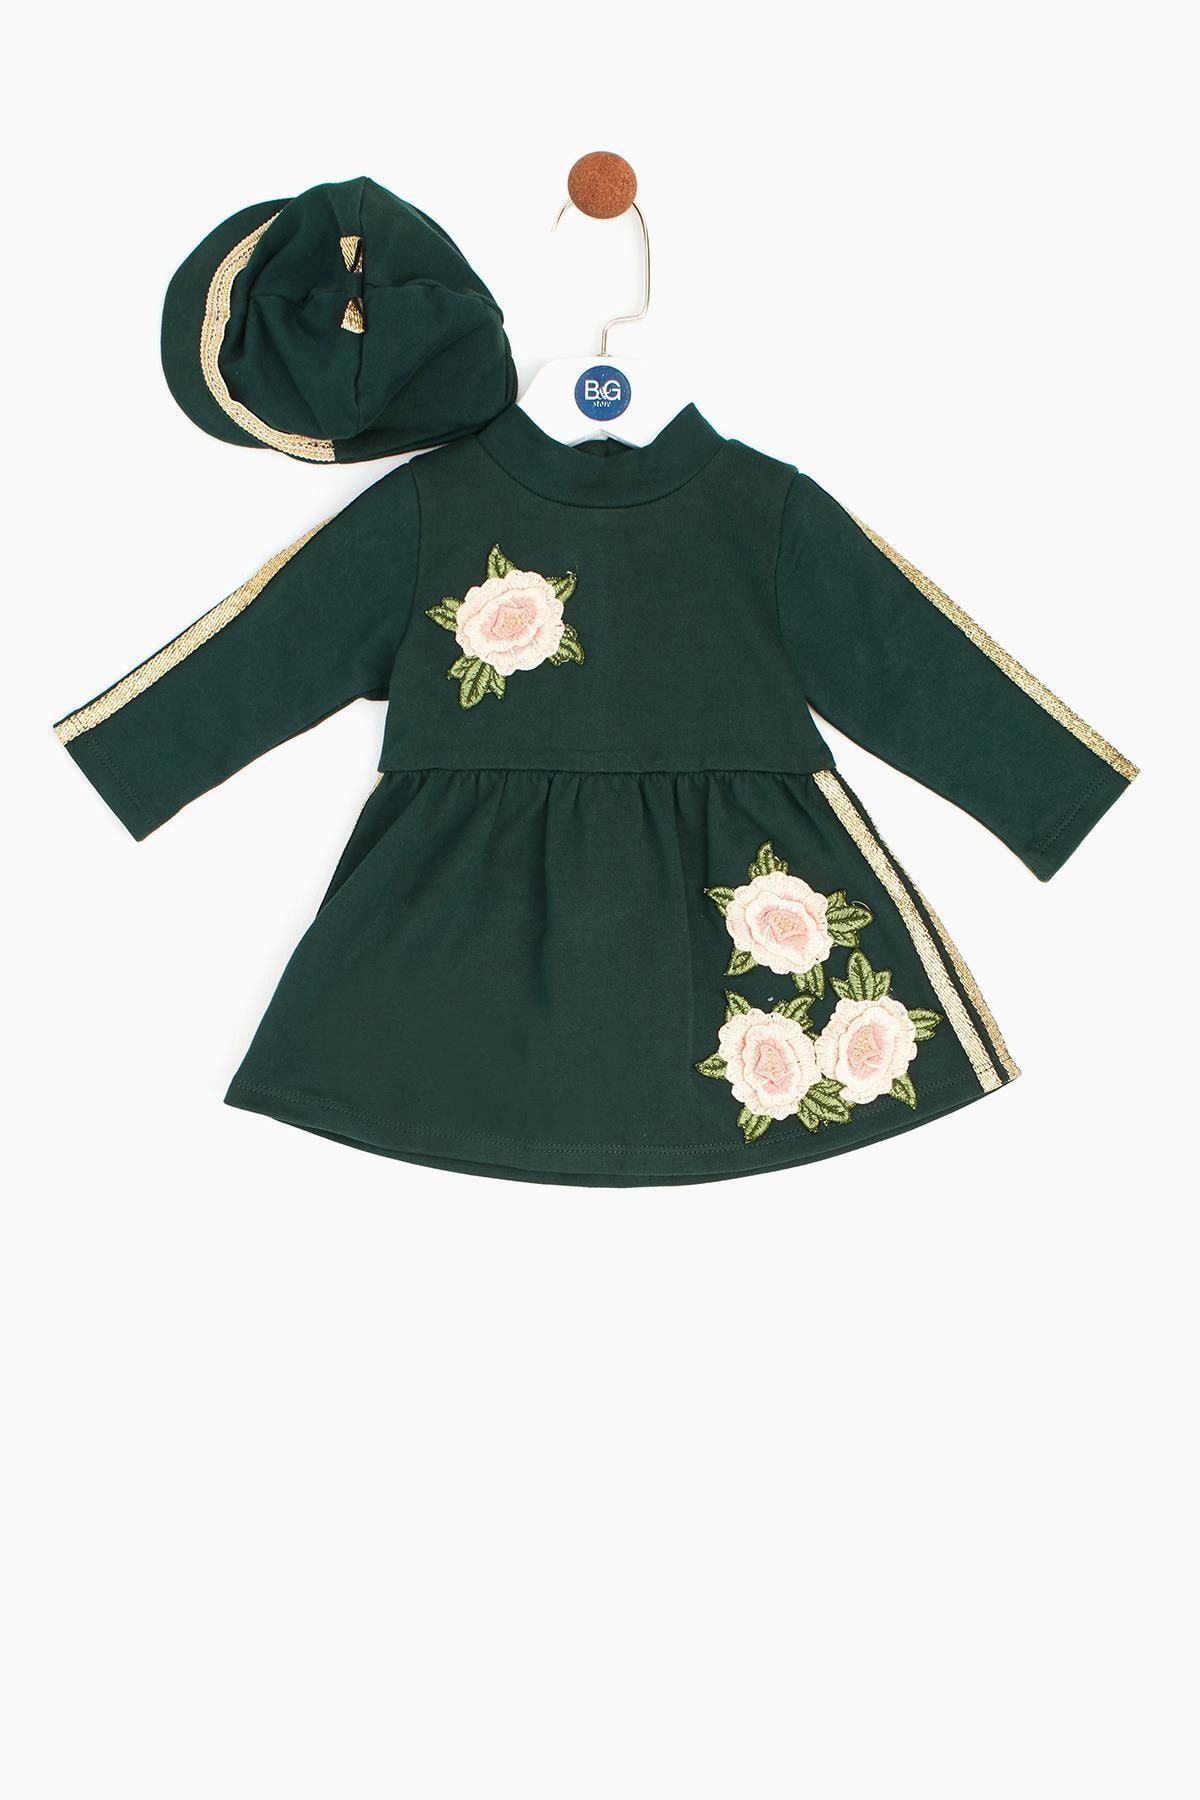 BG Baby Kız Bebek Yeşil Elbise Takımı 18fw2bg2815